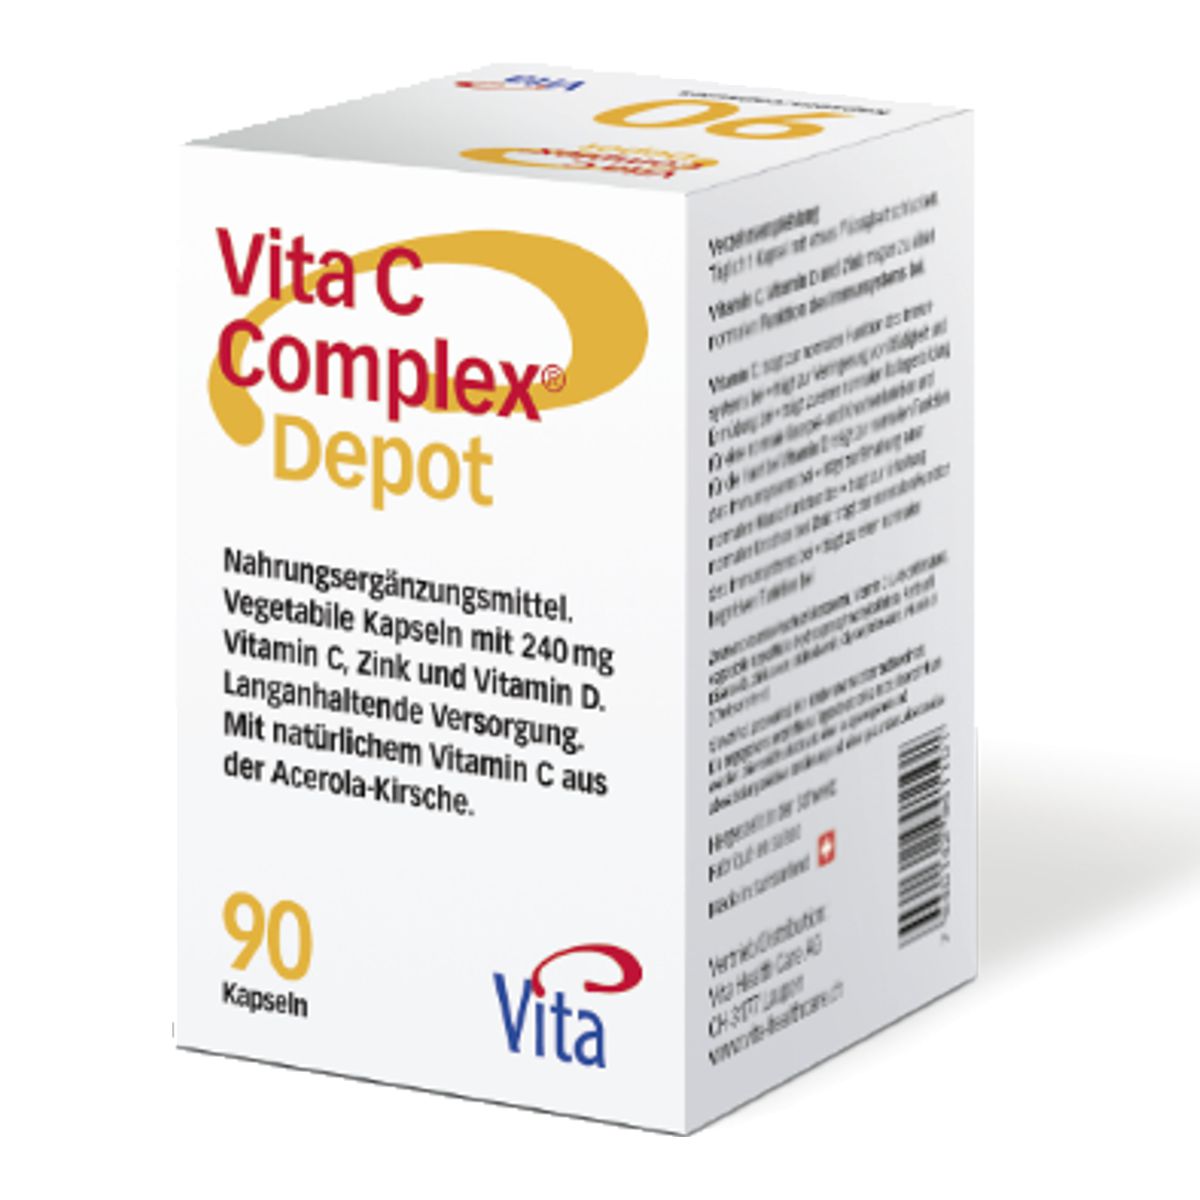 Vita_C_Complex_Depot_online_kaufen